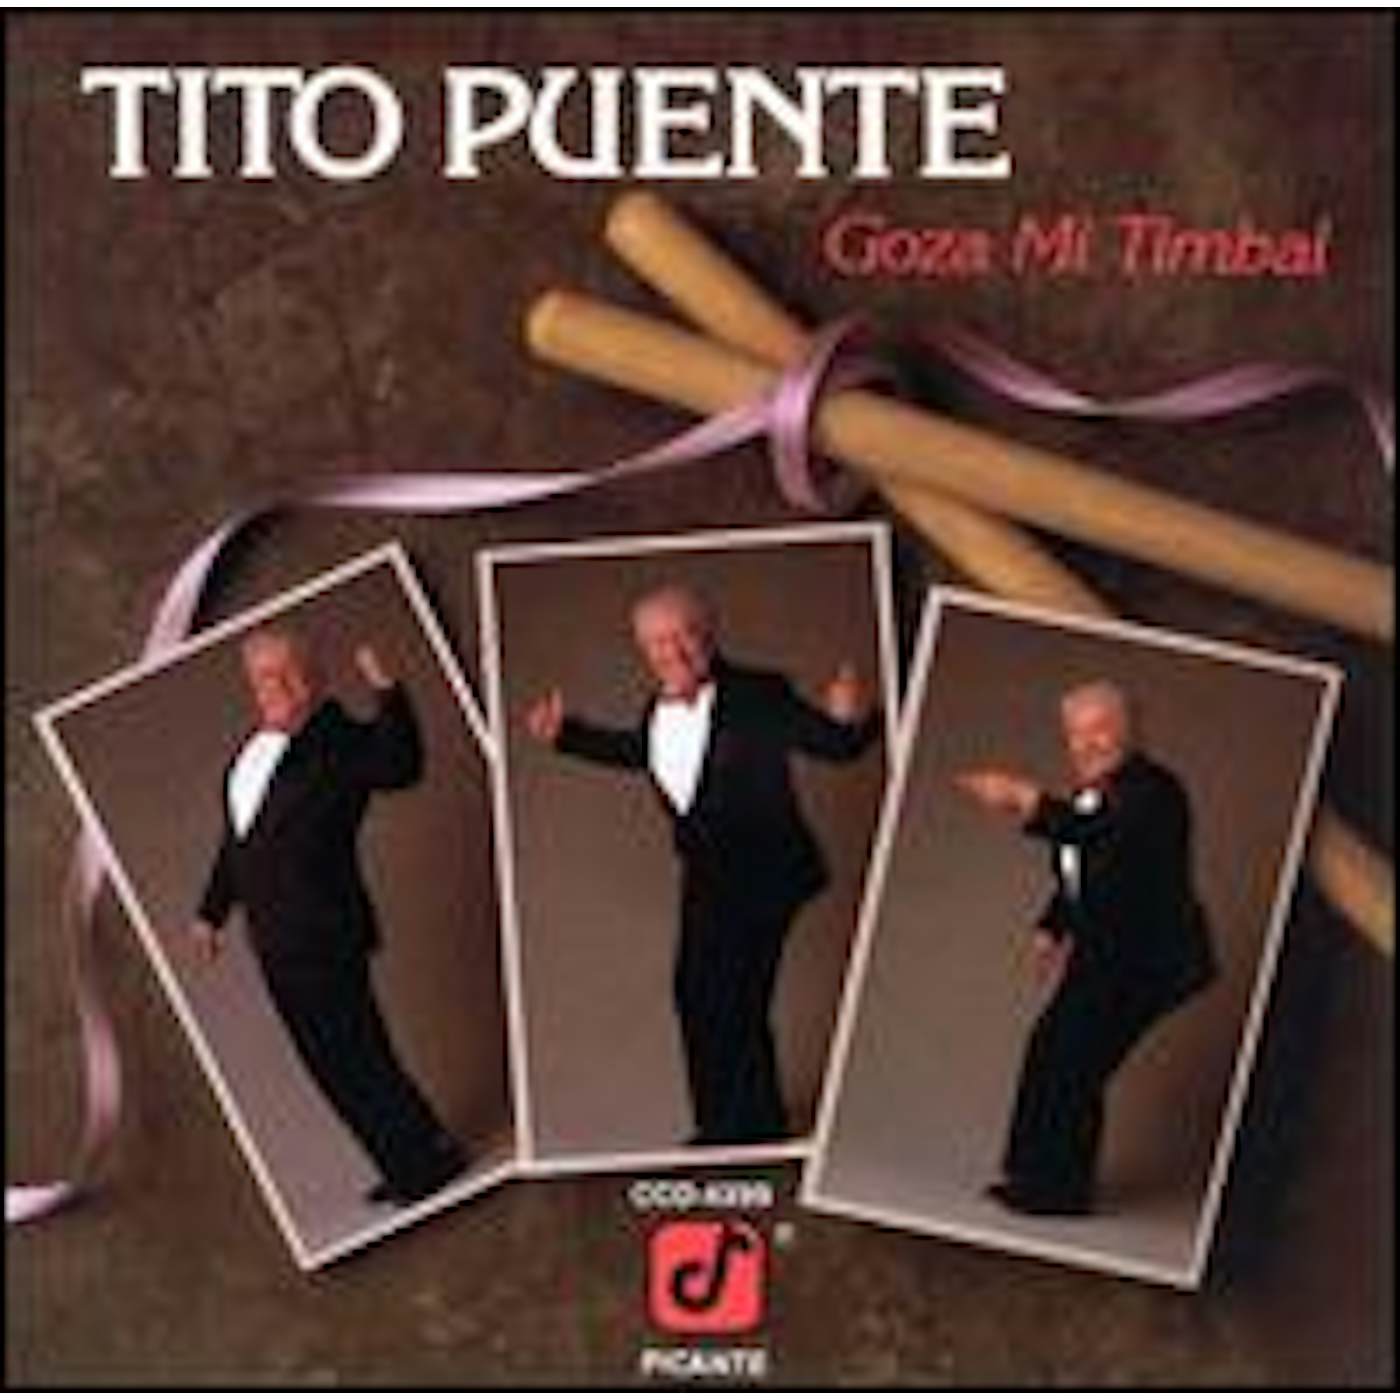 Tito Puente GOZA MI TIMBAL CD